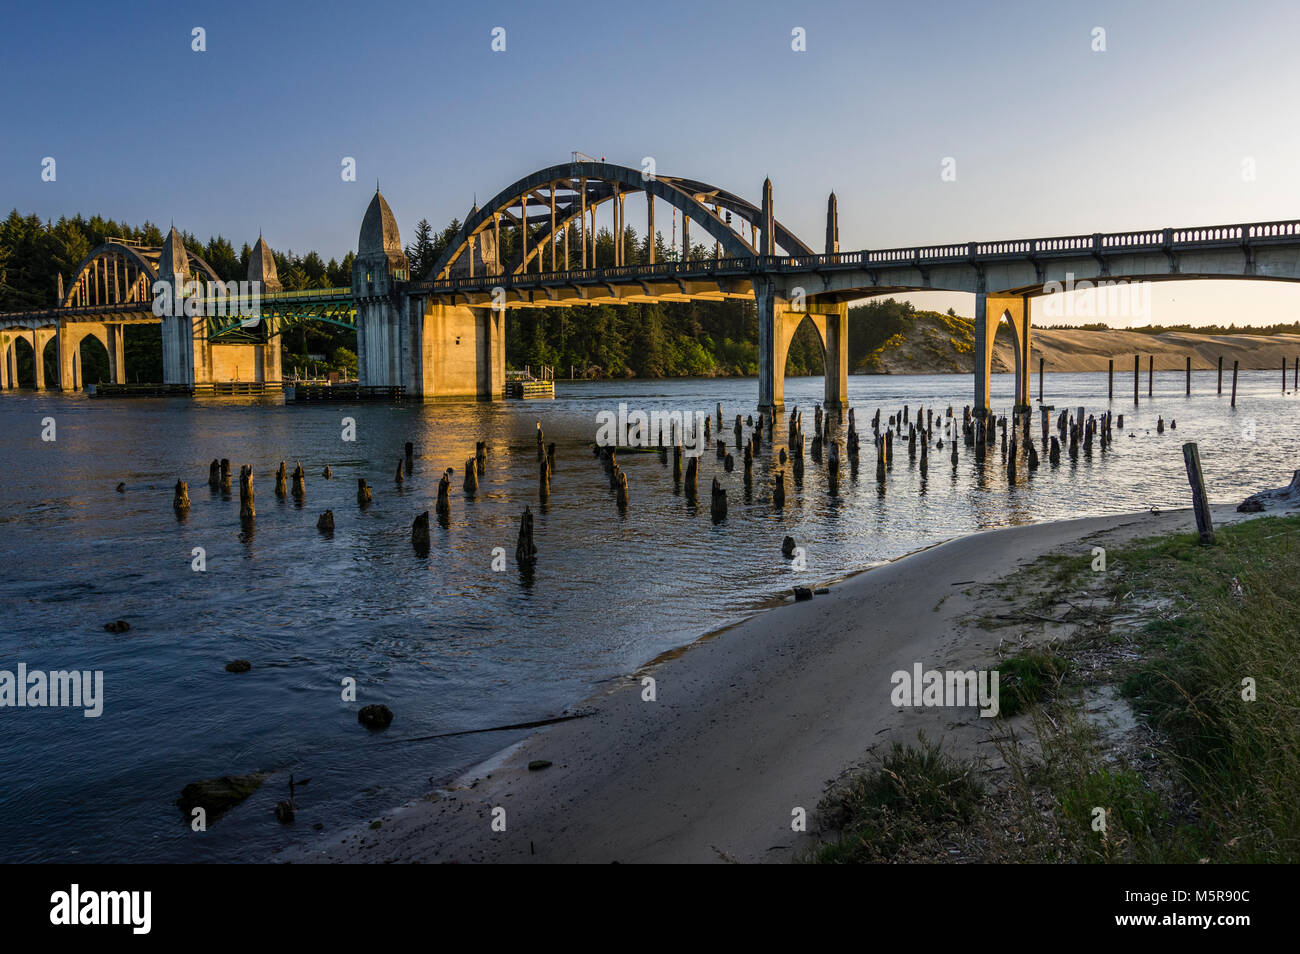 Rivière Siuslaw pont de Florence nous transporte de l'Oregon 101 de l'autre côté de la rivière Siuslaw Banque D'Images